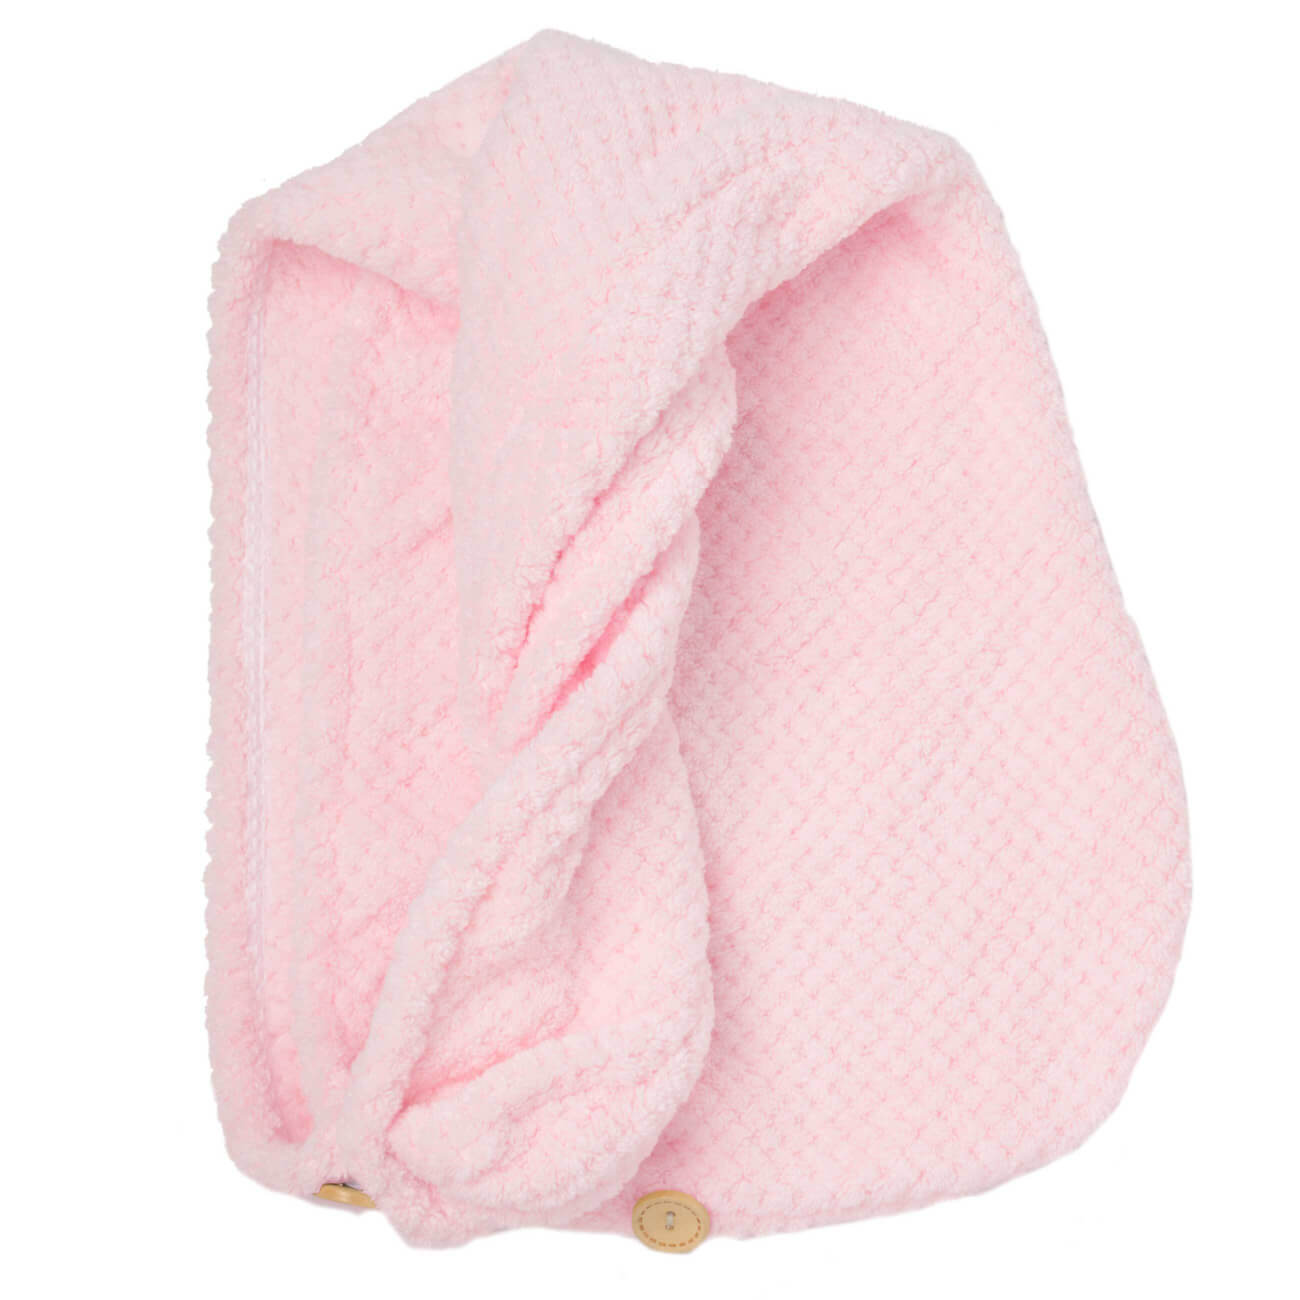 Полотенце-тюрбан для волос, 62х24 см, микроволокно, розовое, Fiber spa полотенце тюрбан для волос 62х24 см микроволокно розовое fiber spa